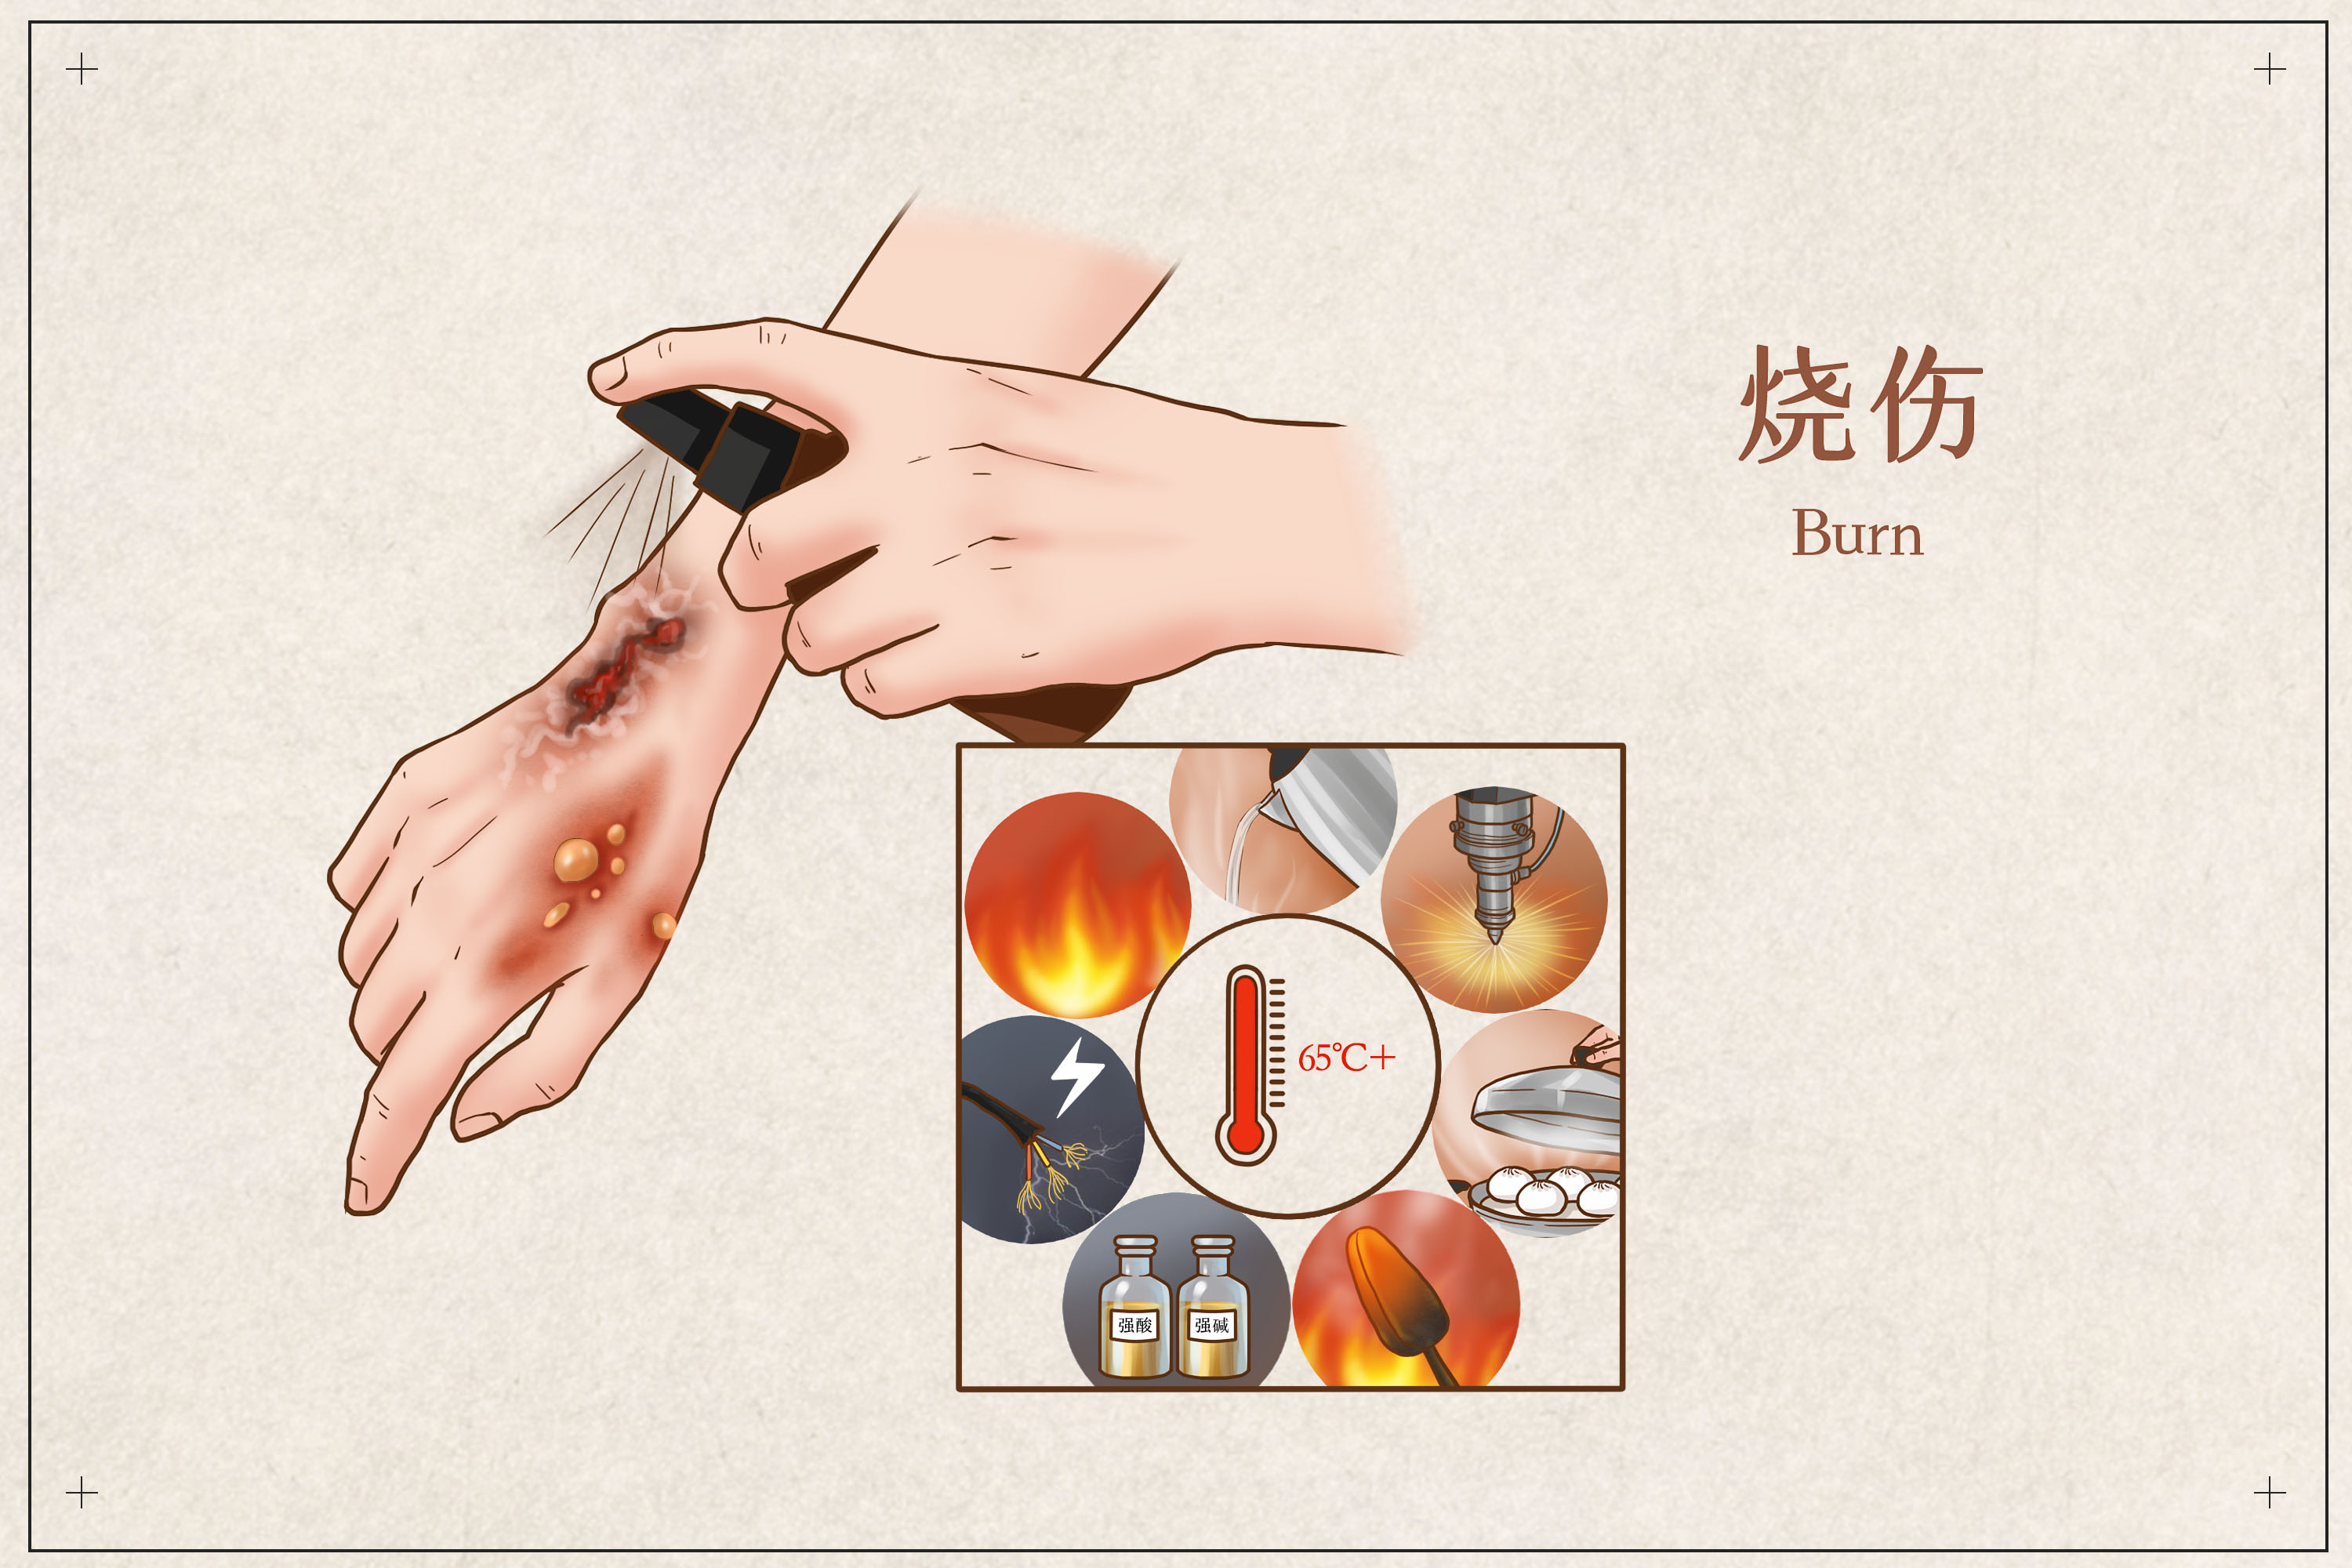 关于烧伤，您需要知道的“体位摆放”-健康科普-武汉市第三医院|武汉大学同仁医院